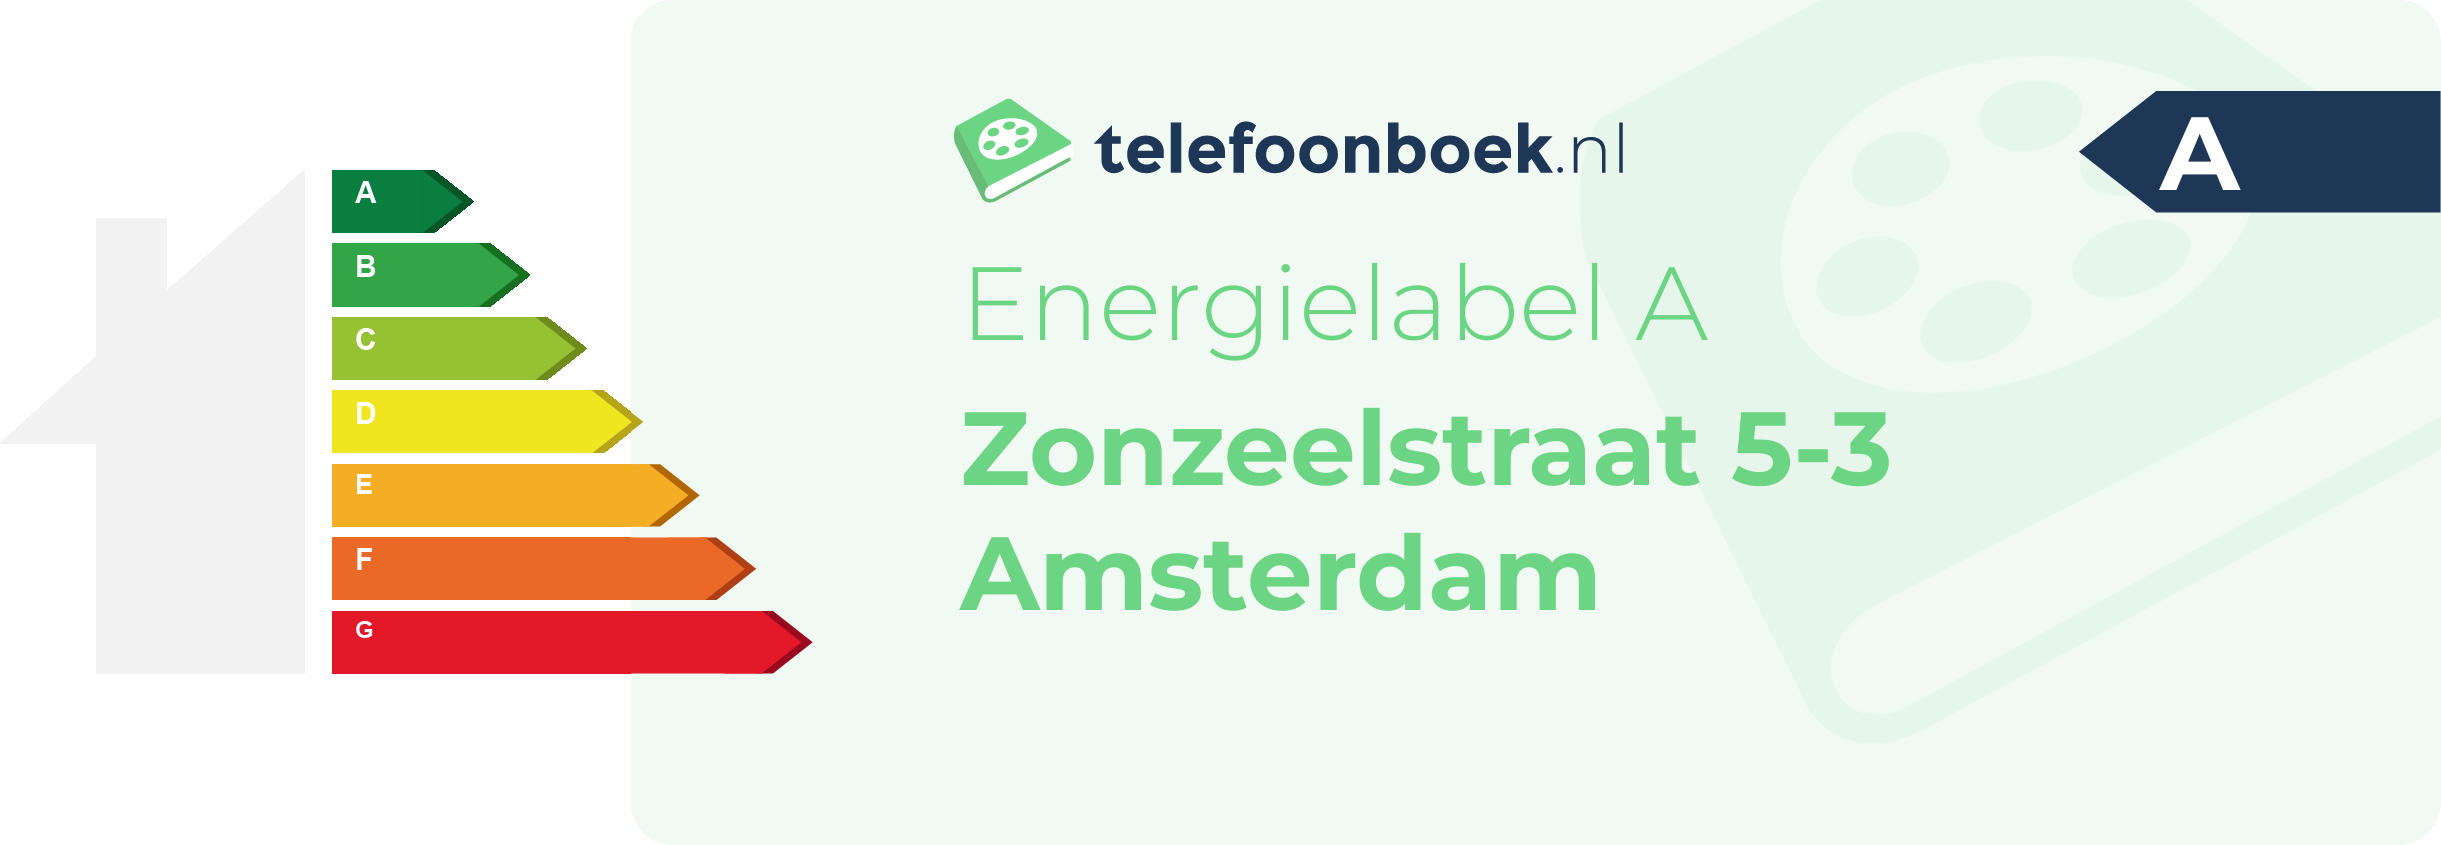 Energielabel Zonzeelstraat 5-3 Amsterdam